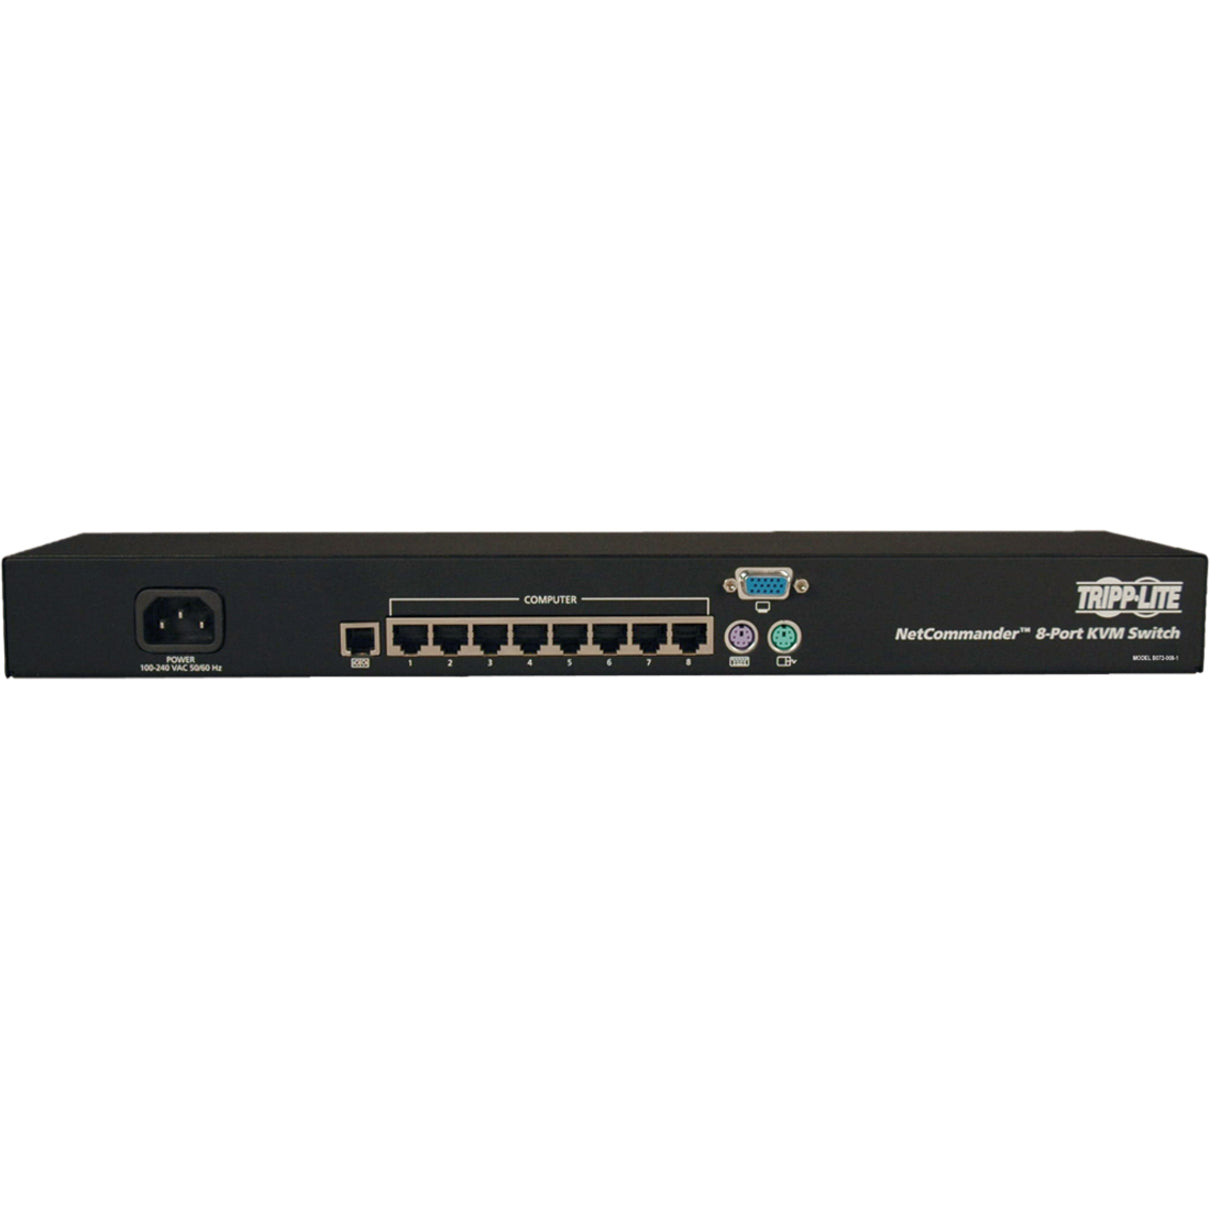 Tripp Lite B072-008-1 NetCommander Digital KVM Switch, 8-Port Rackmount CAT5, UXGA, 1600 x 1200, 3 Year Warranty